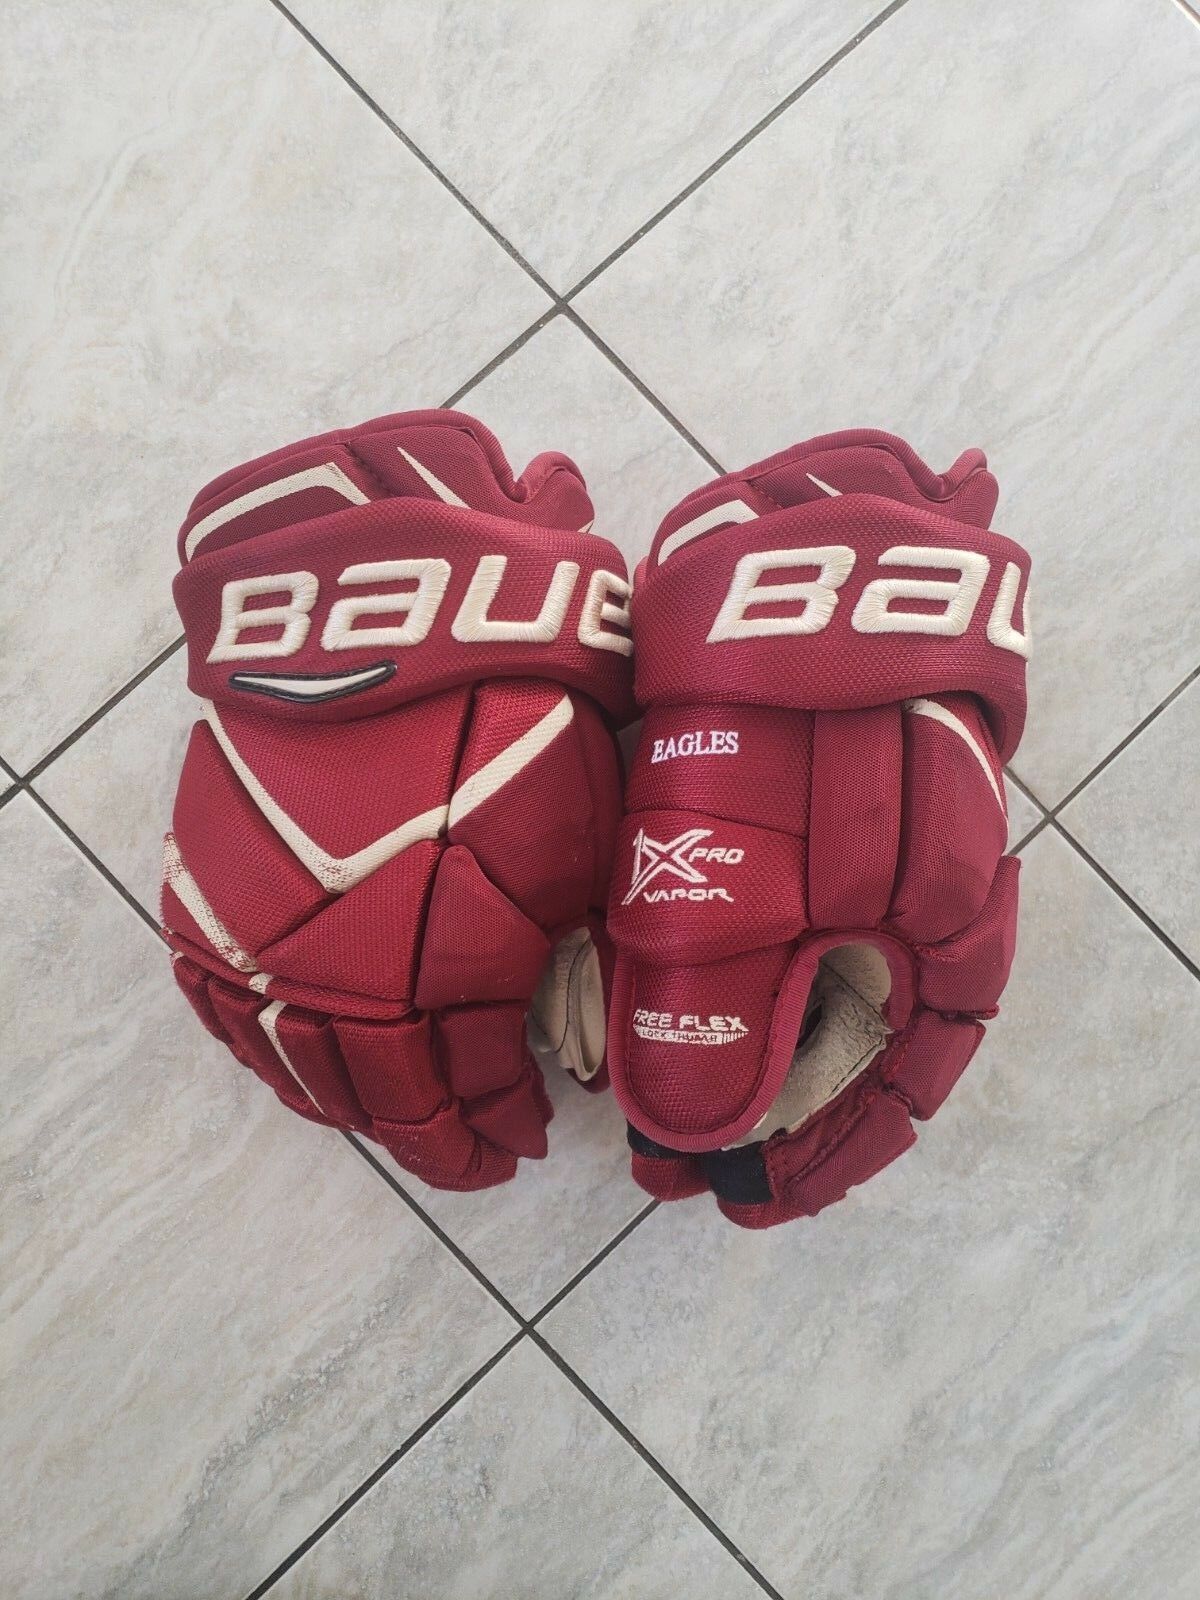 Boston College Bauer 1x Pro Stock Hockey Gloves, 14", Poron